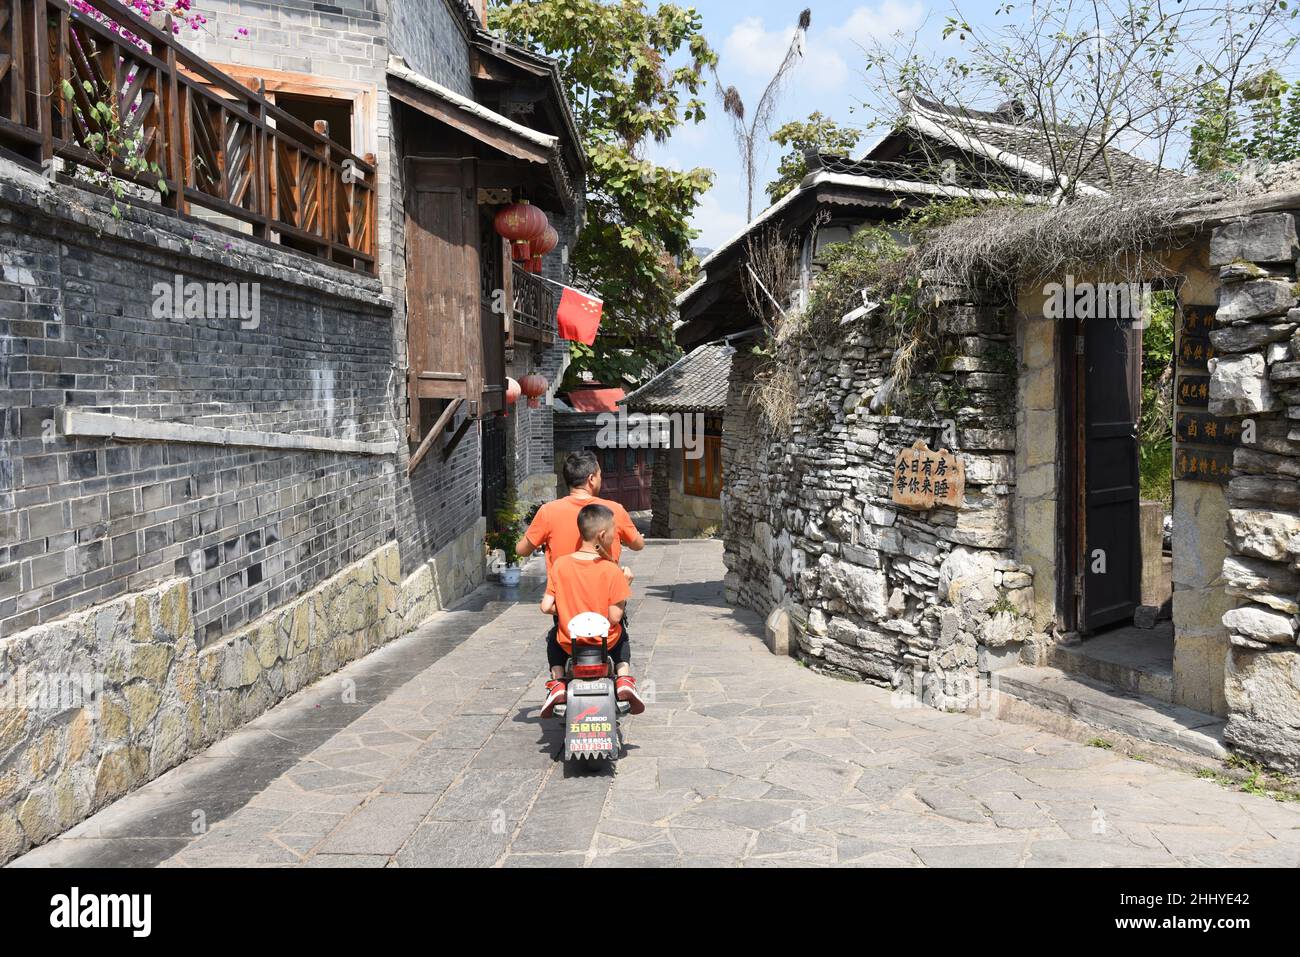 Guiyang, Guiyang, Cina. 26th Jan 2022. L'antica città di Qingyan, una delle quattro antiche città di Guizhou, si trova nel sobborgo meridionale della città di Guiyang, provincia di Guizhou. Fu costruito nel 10th anno di Hongwu della Dinastia Ming (1378). Originariamente era una fortezza militare. Gli antichi edifici delle dinastie Ming e Qing, dal design squisito e dalla squisita lavorazione, sono attraversati nella città antica, con templi, padiglioni, colonne dipinte e travi intagliate, angoli volanti e doppie gronde. L'antica città è piena di gente e cultura, tra cui la celebrità storica Zhou Yuh Foto Stock